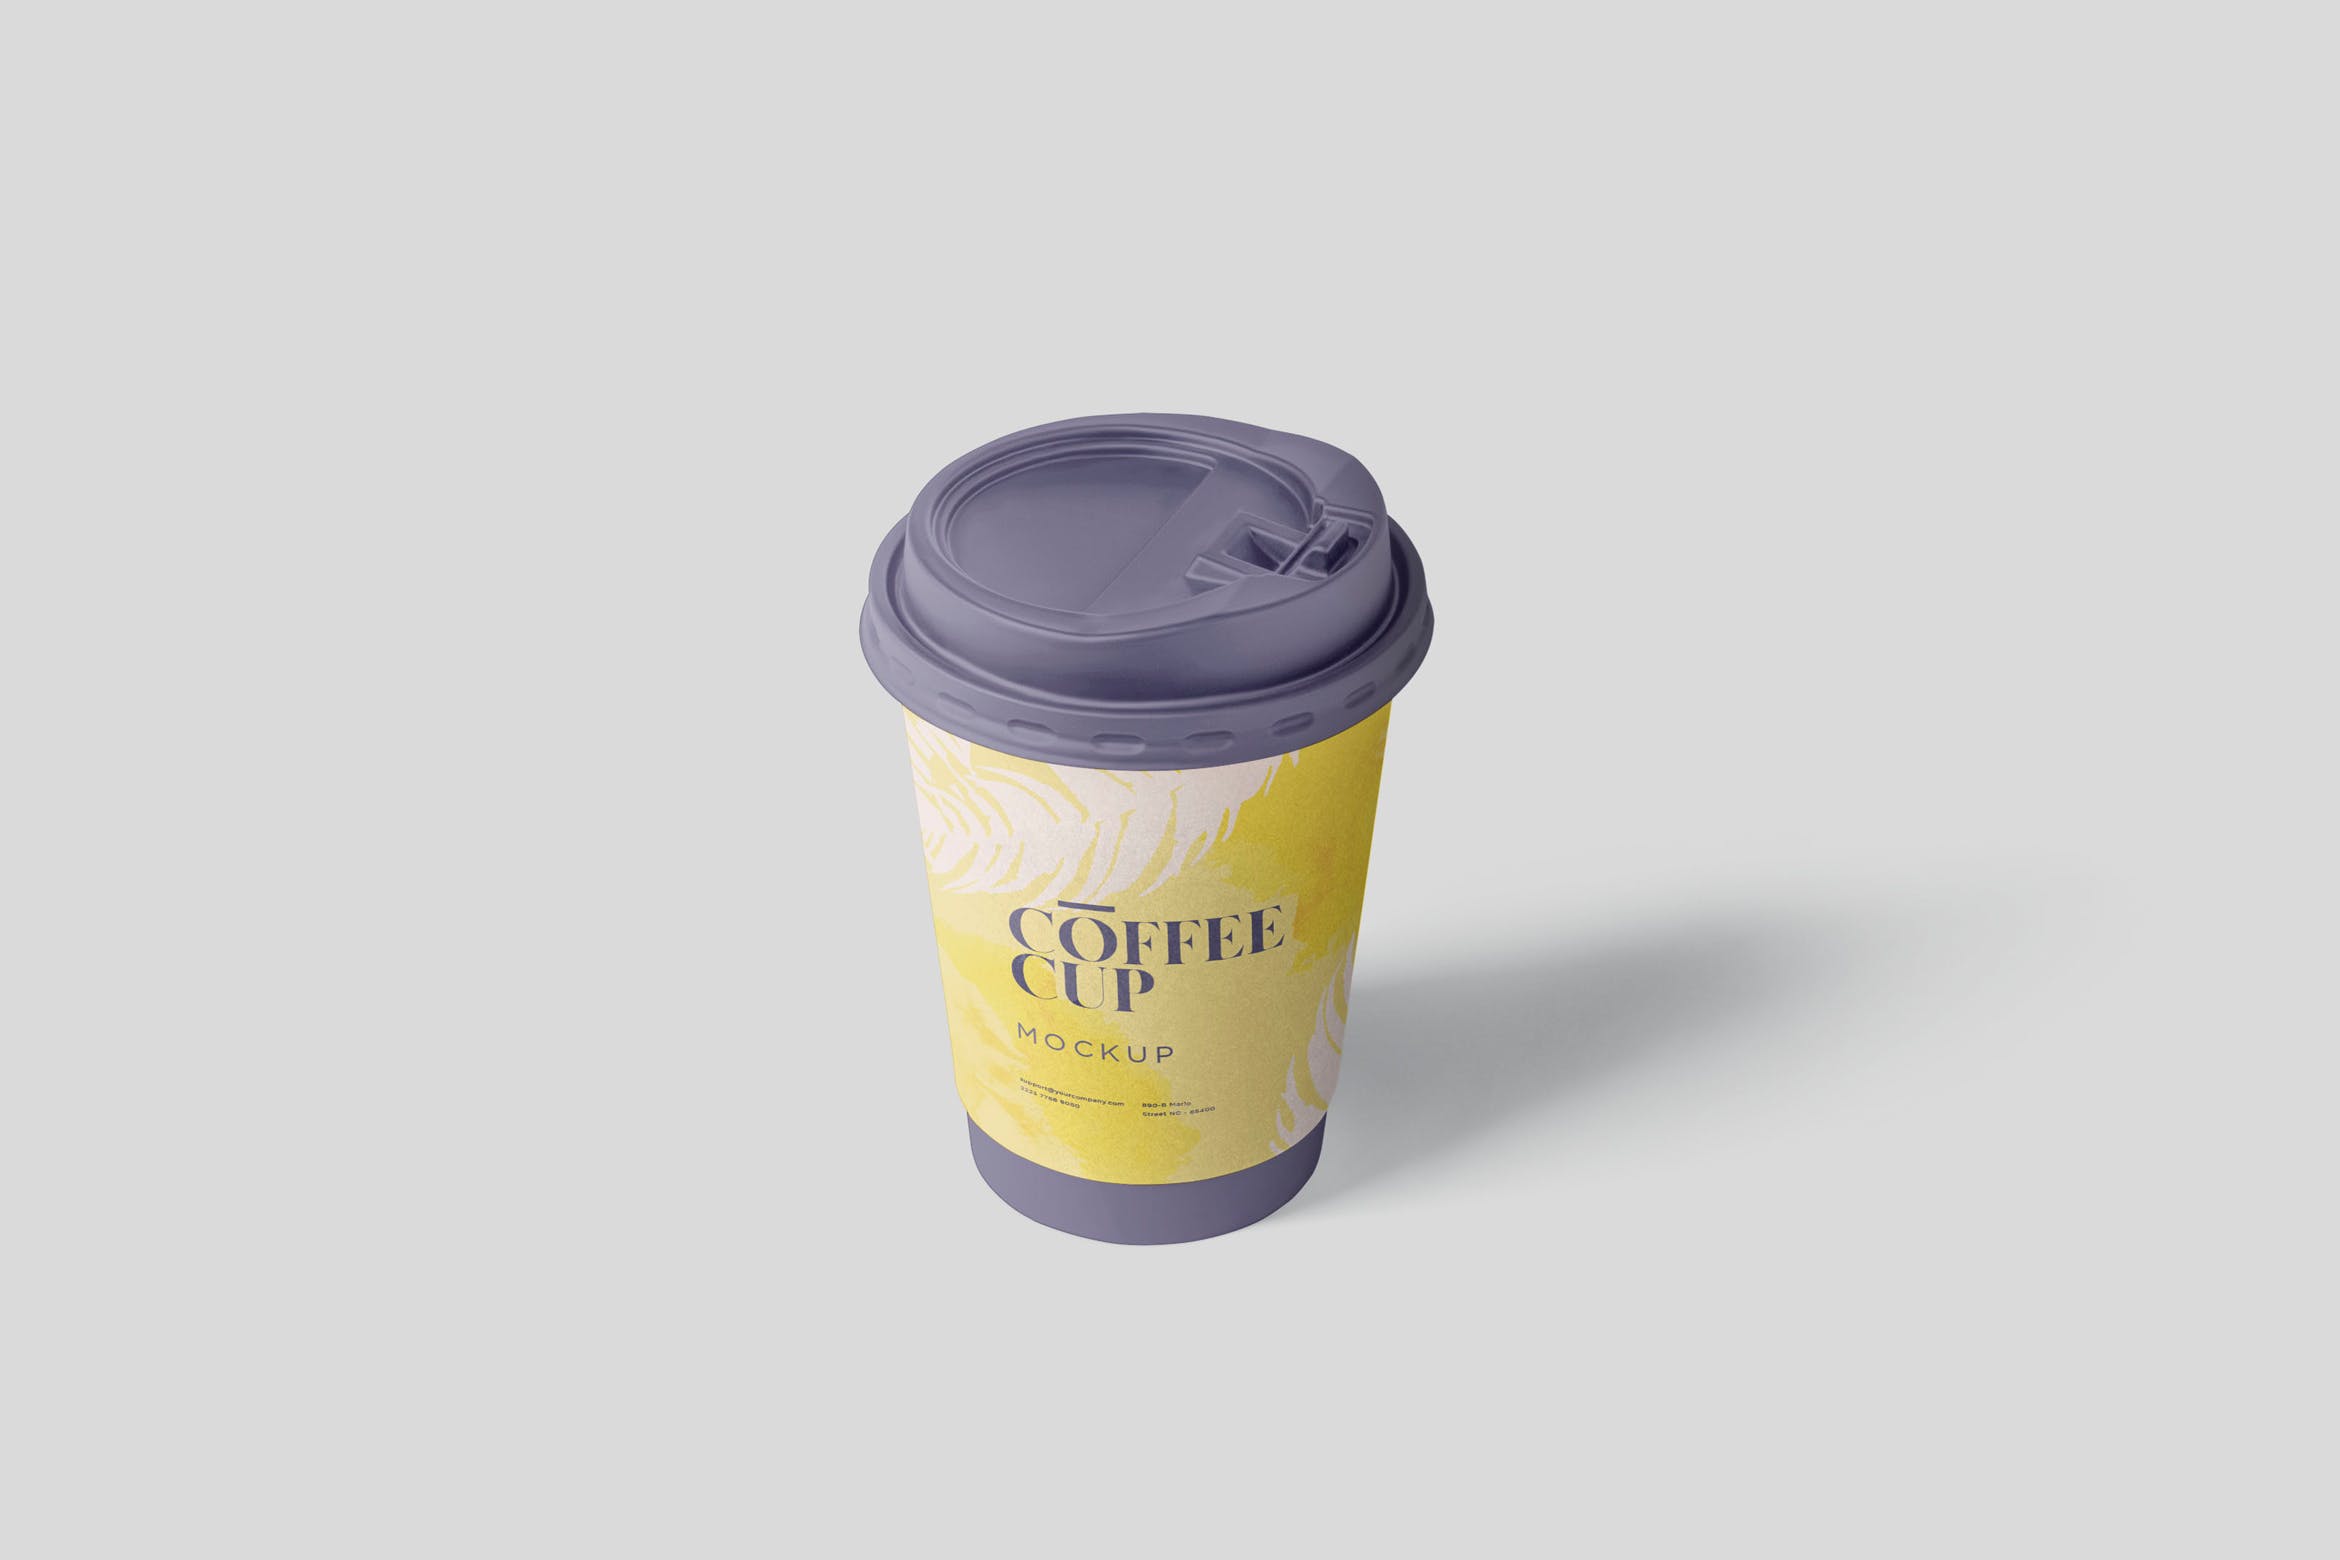 咖啡一次性纸杯设计效果图第一素材精选 Coffee Cup Mockup插图